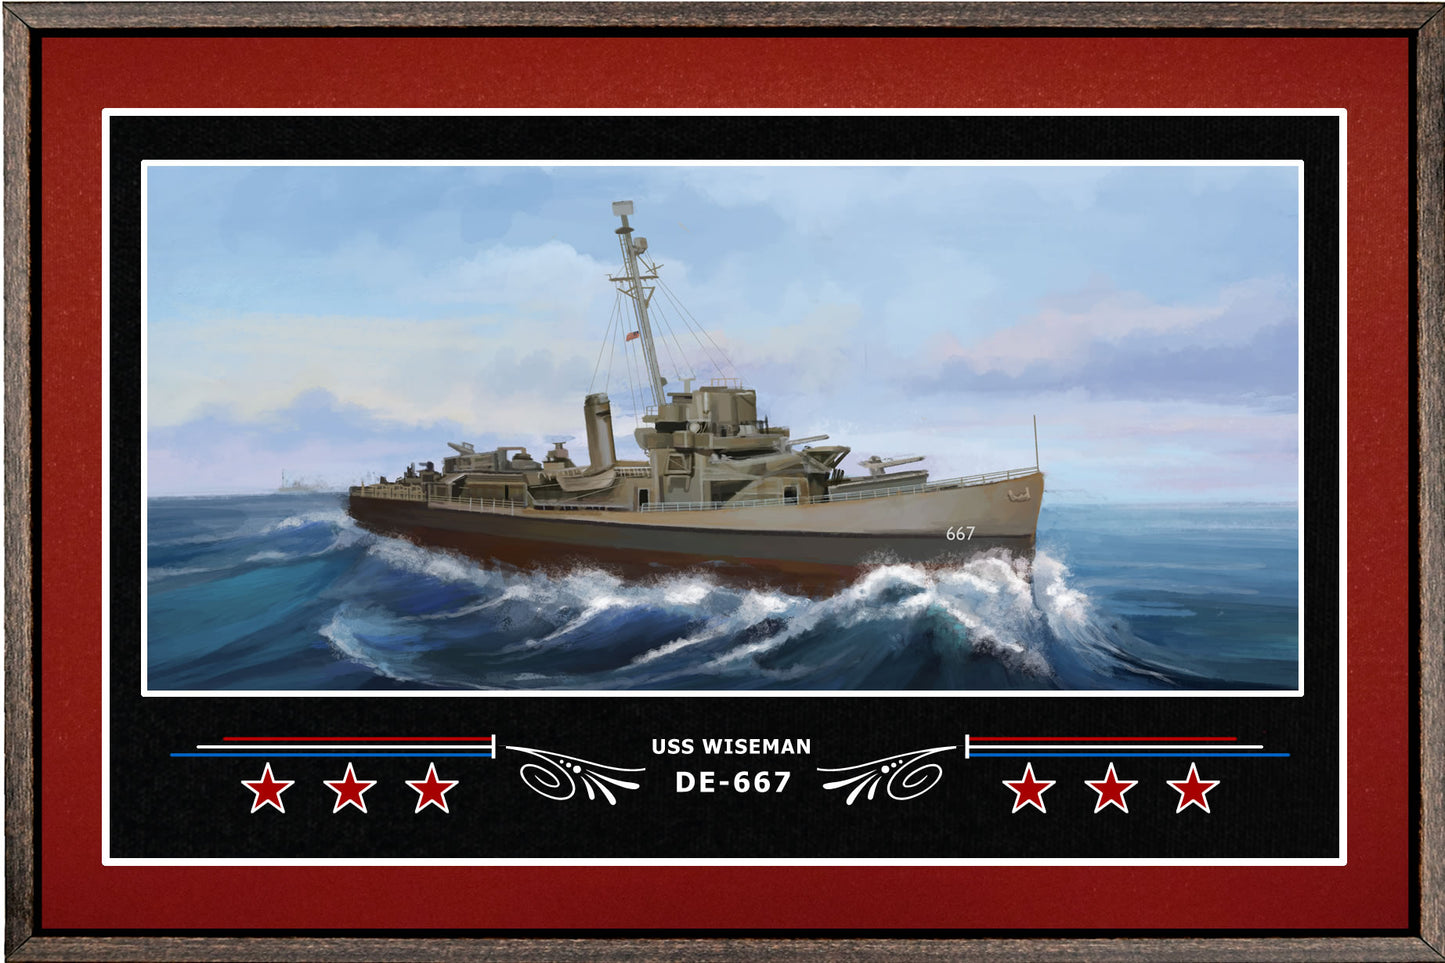 USS WISEMAN DE 667 BOX FRAMED CANVAS ART BURGUNDY